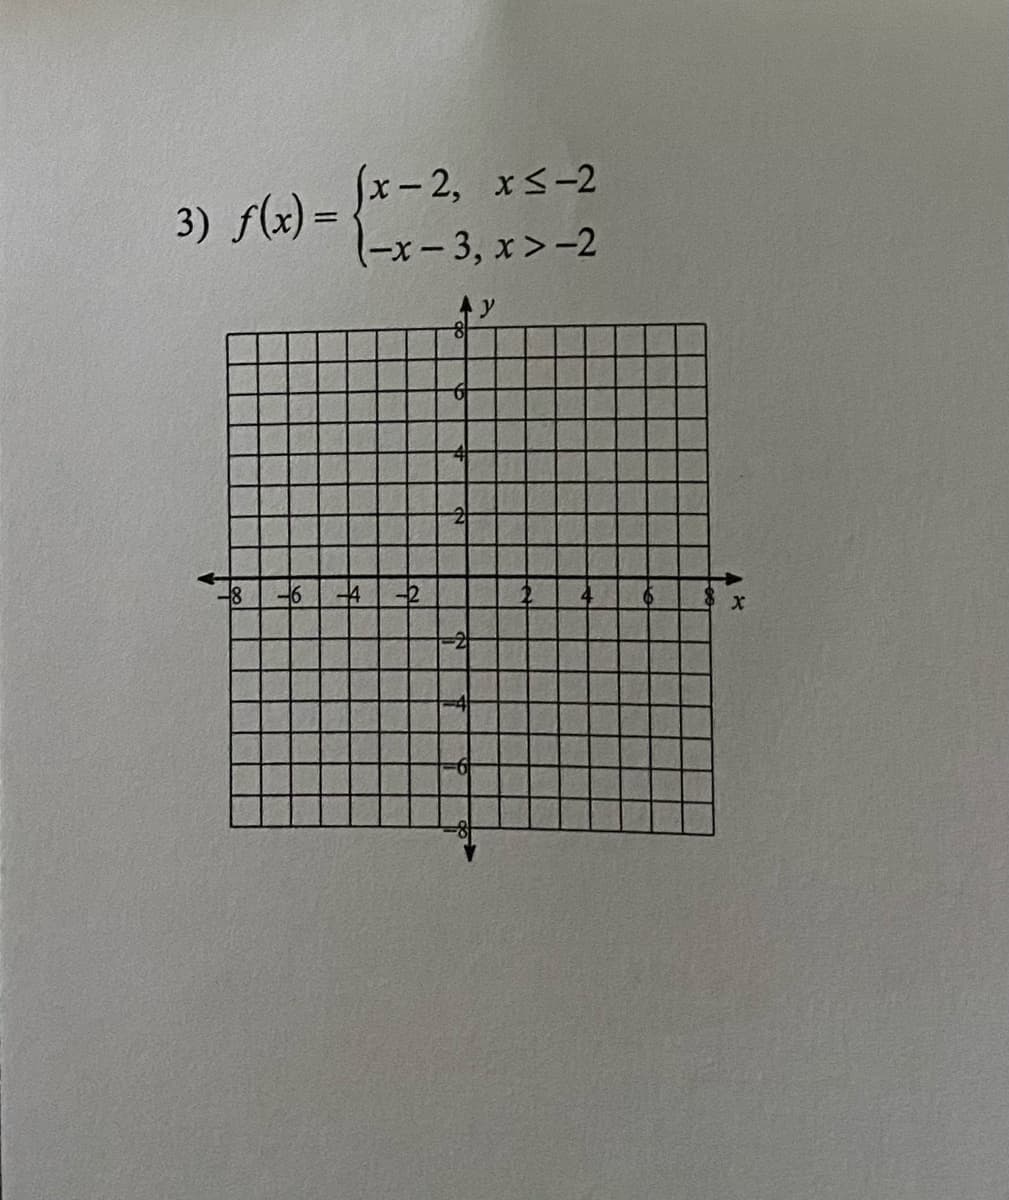 x-2, xS-2
(-x- 3, x>-2
3) f(x) =
-2
